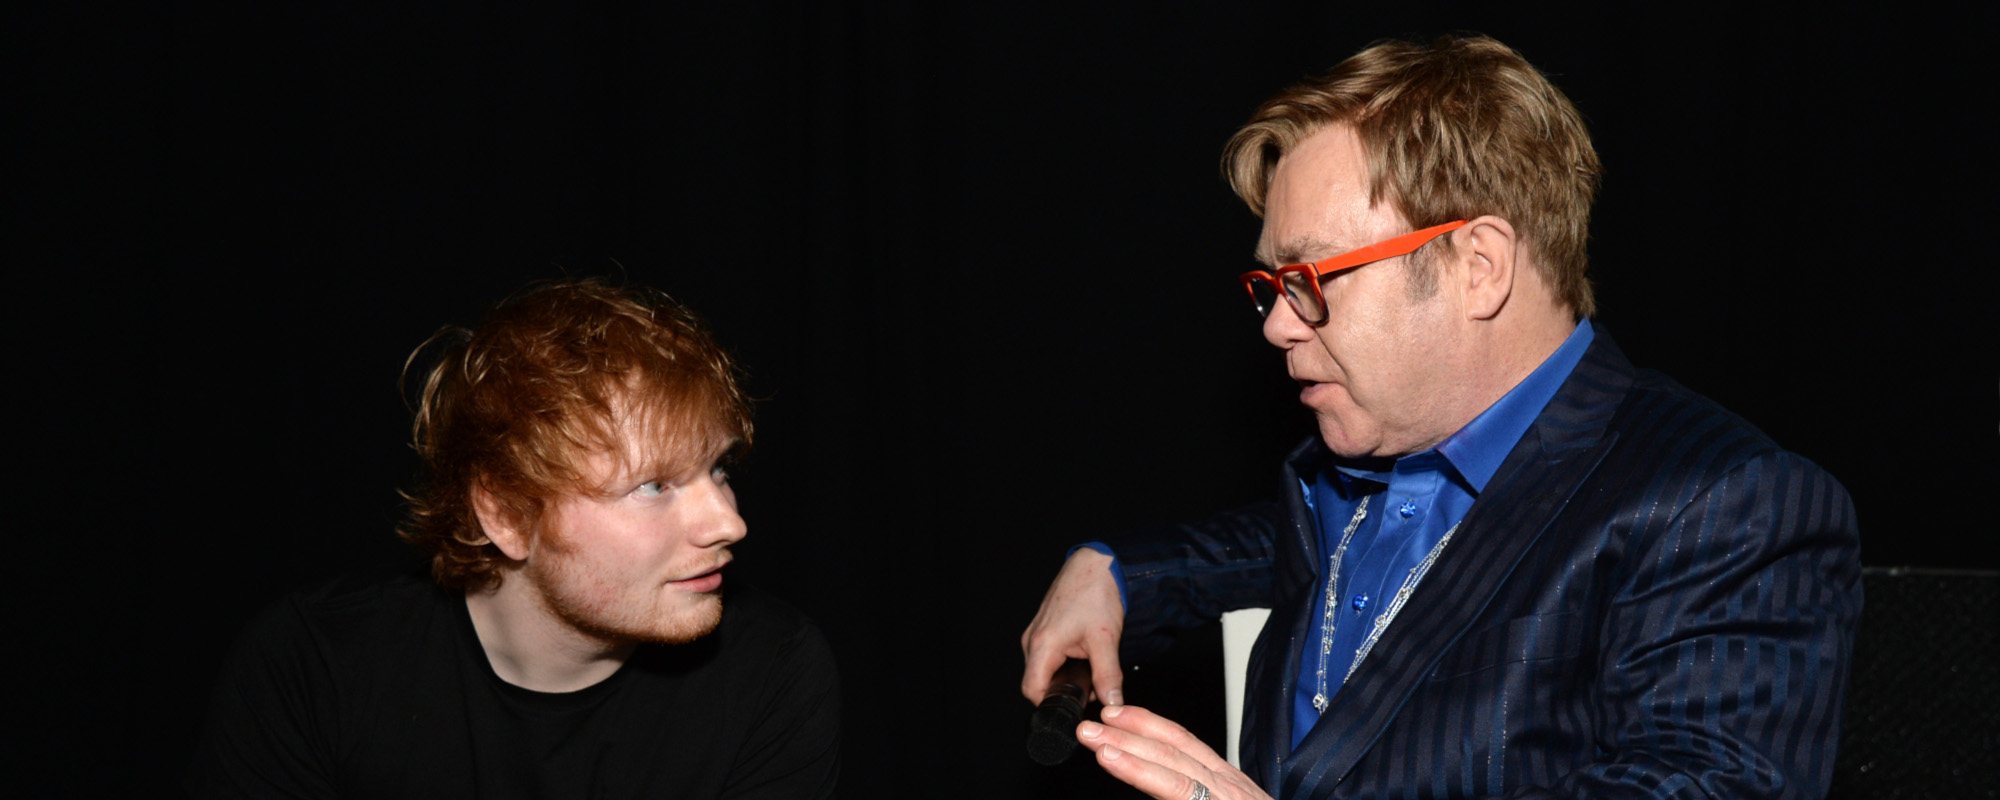 Watch: Elton John and Ed Sheeran Take In Soccer Match, Exchange Christmas Gifts